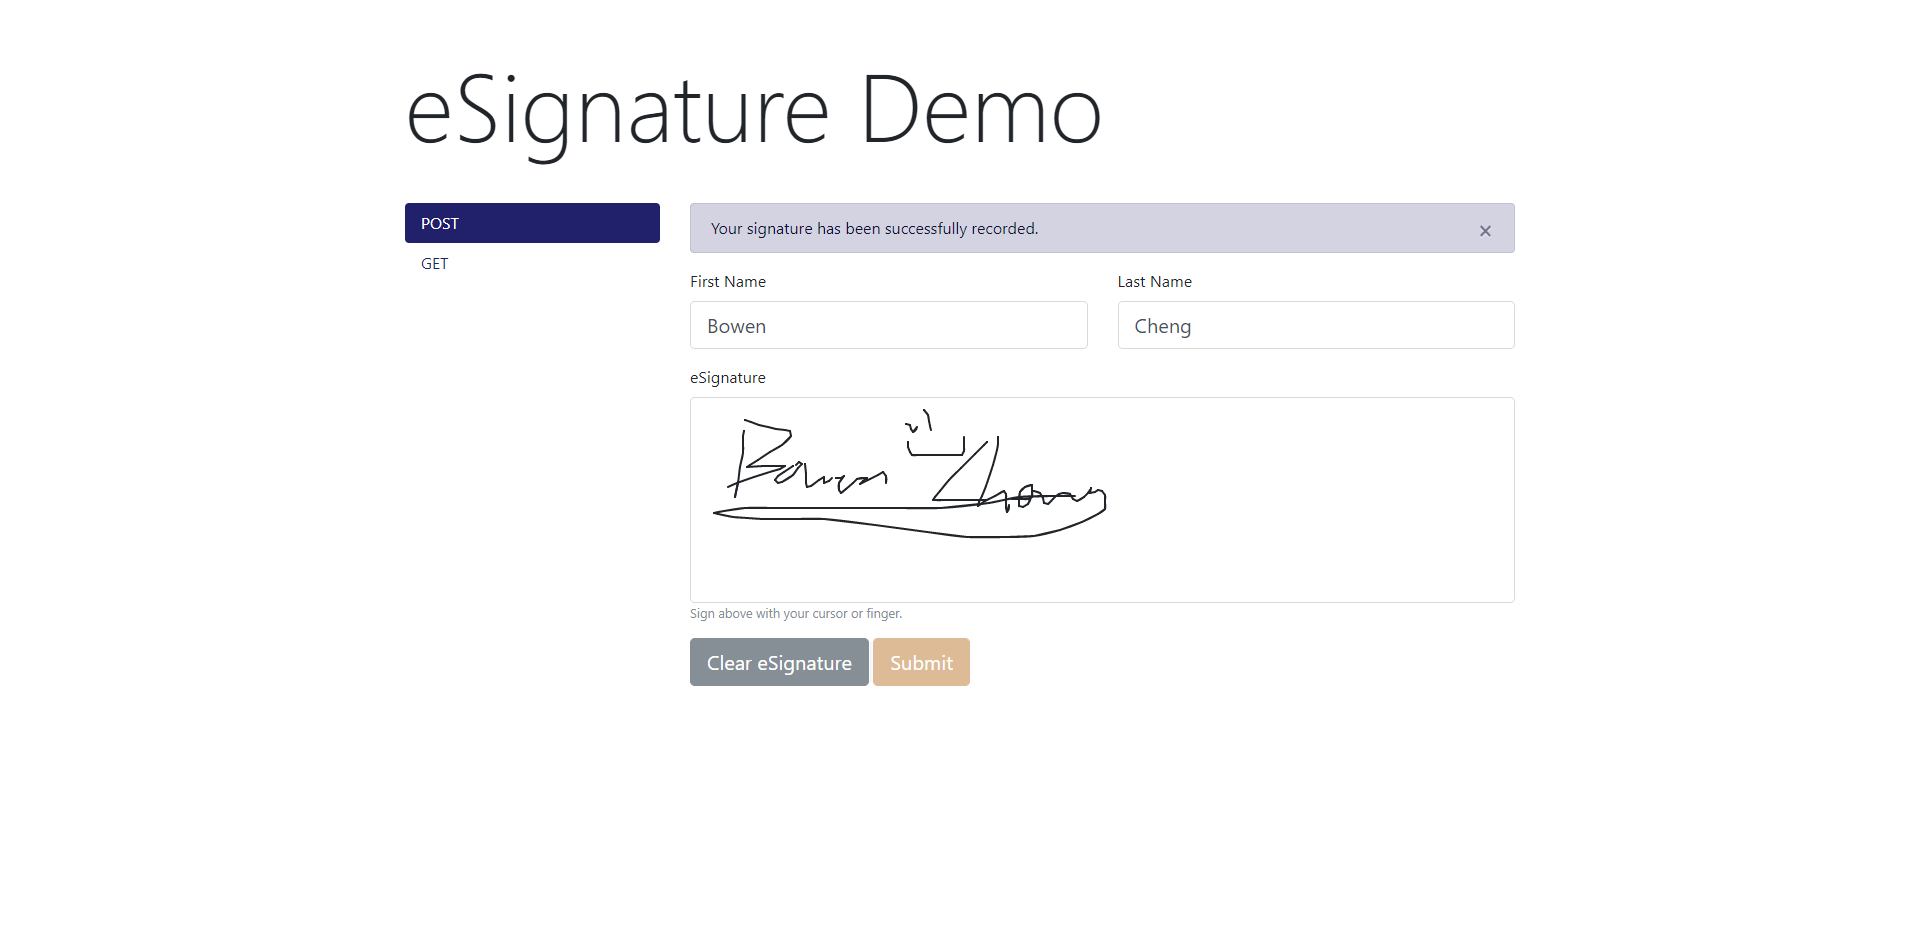 eSignature Demo